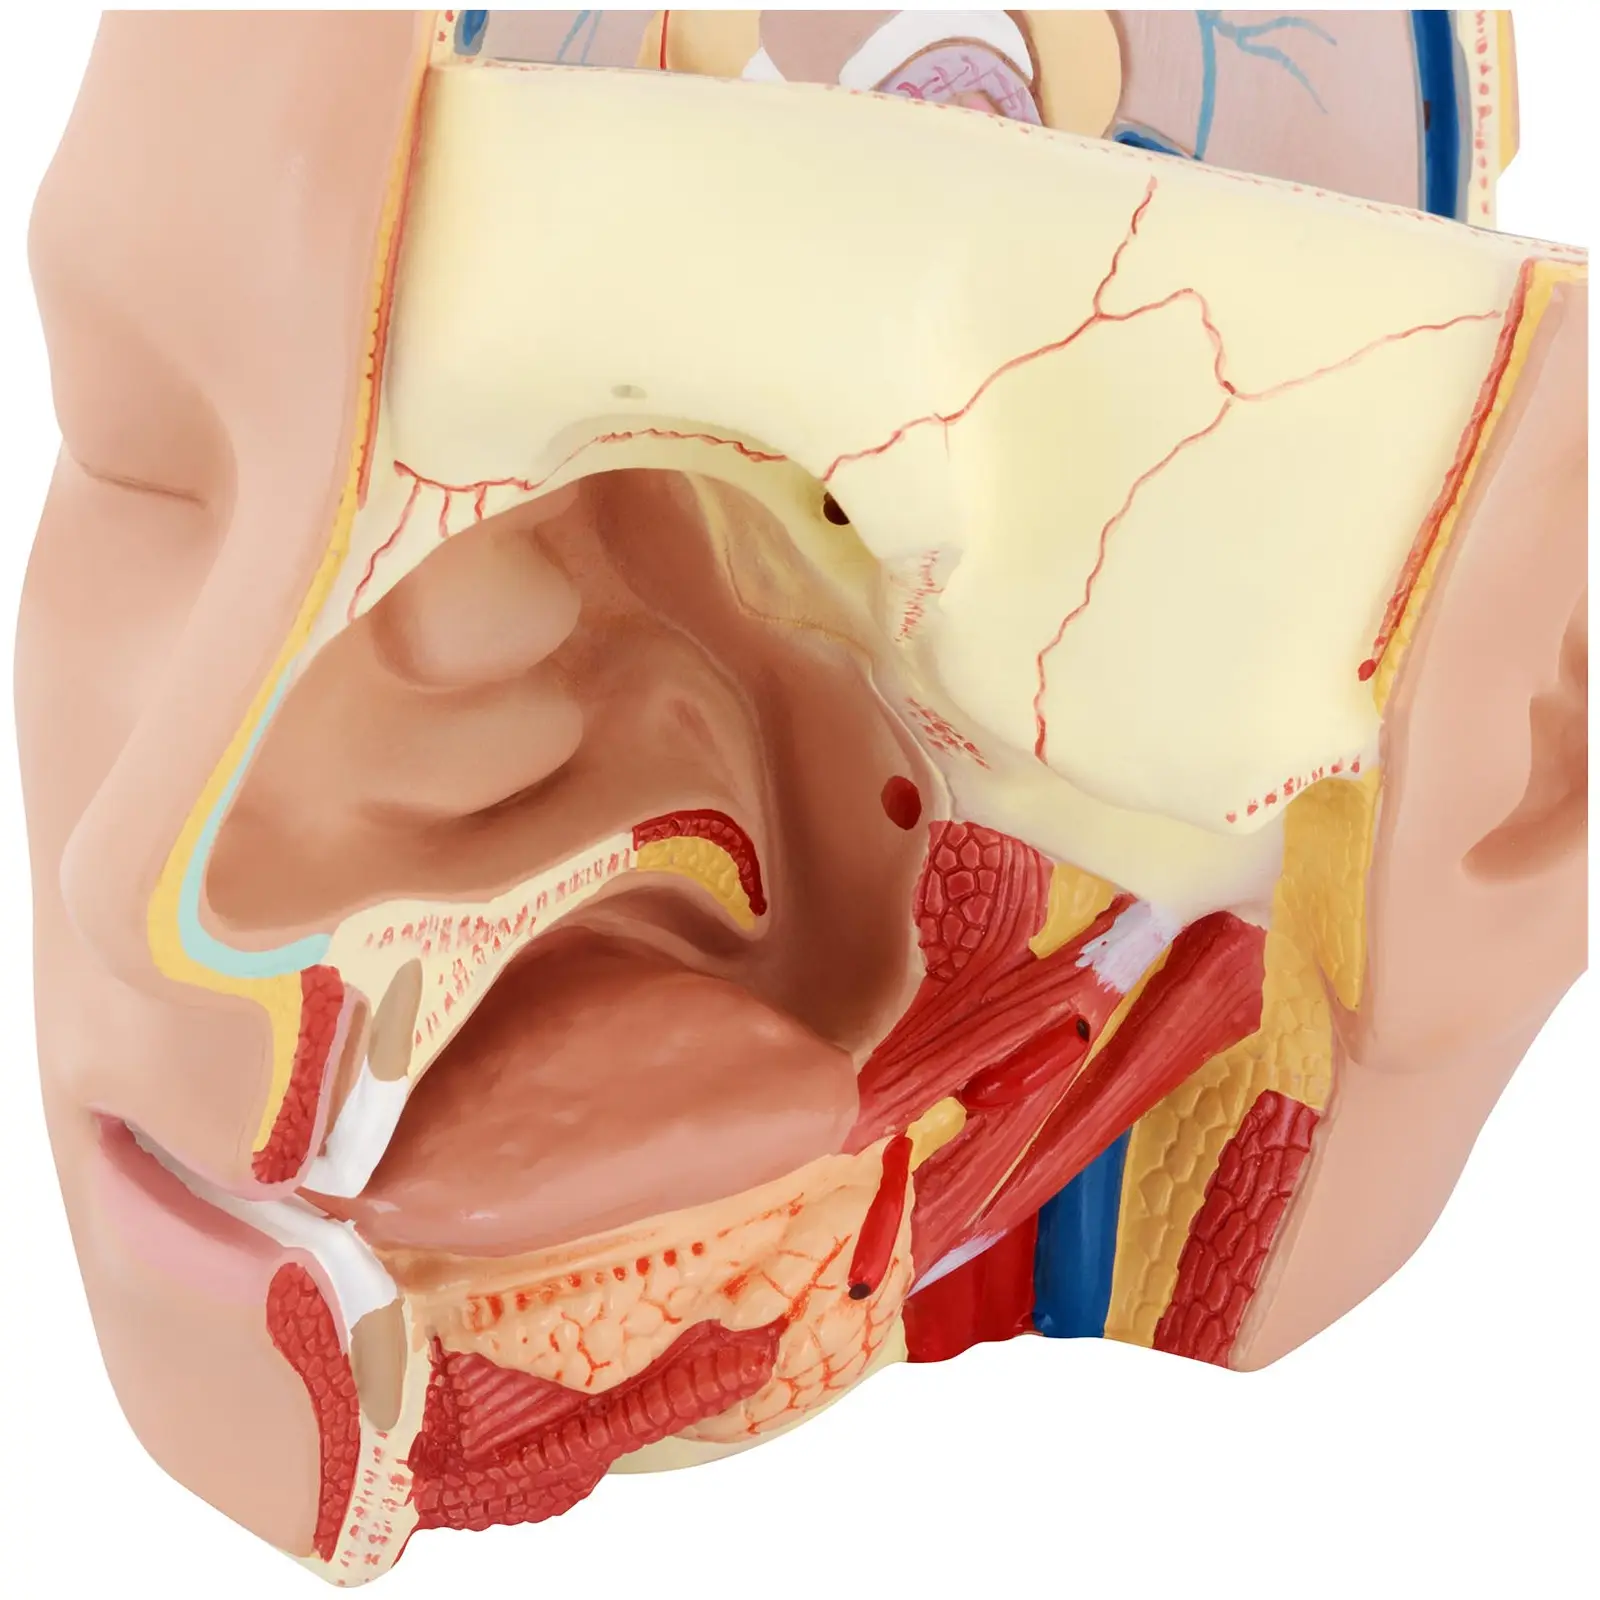 Anatomie Schädel - in 4 Teile zerlegbar - Originalgröße